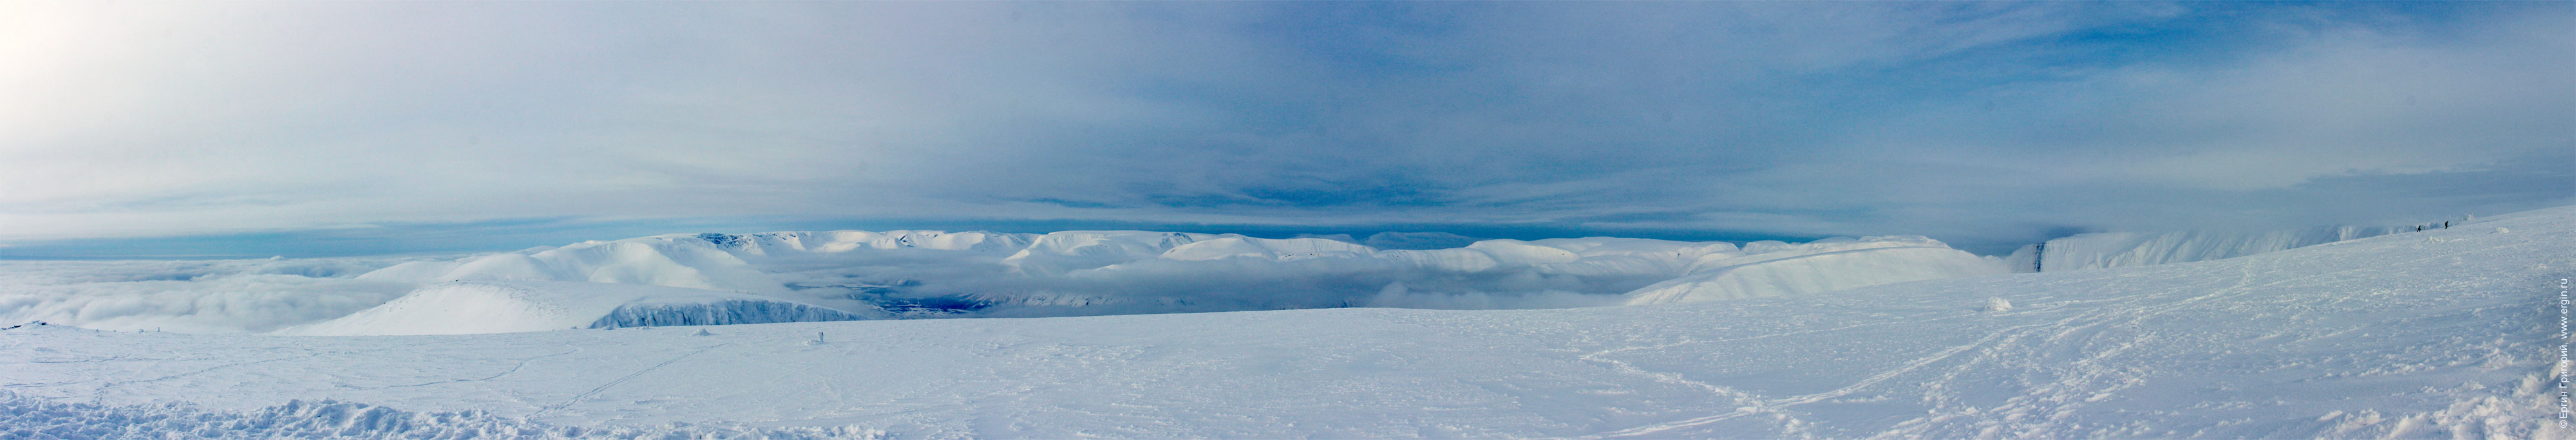 Айкуайвенчорр панорама Южного склона